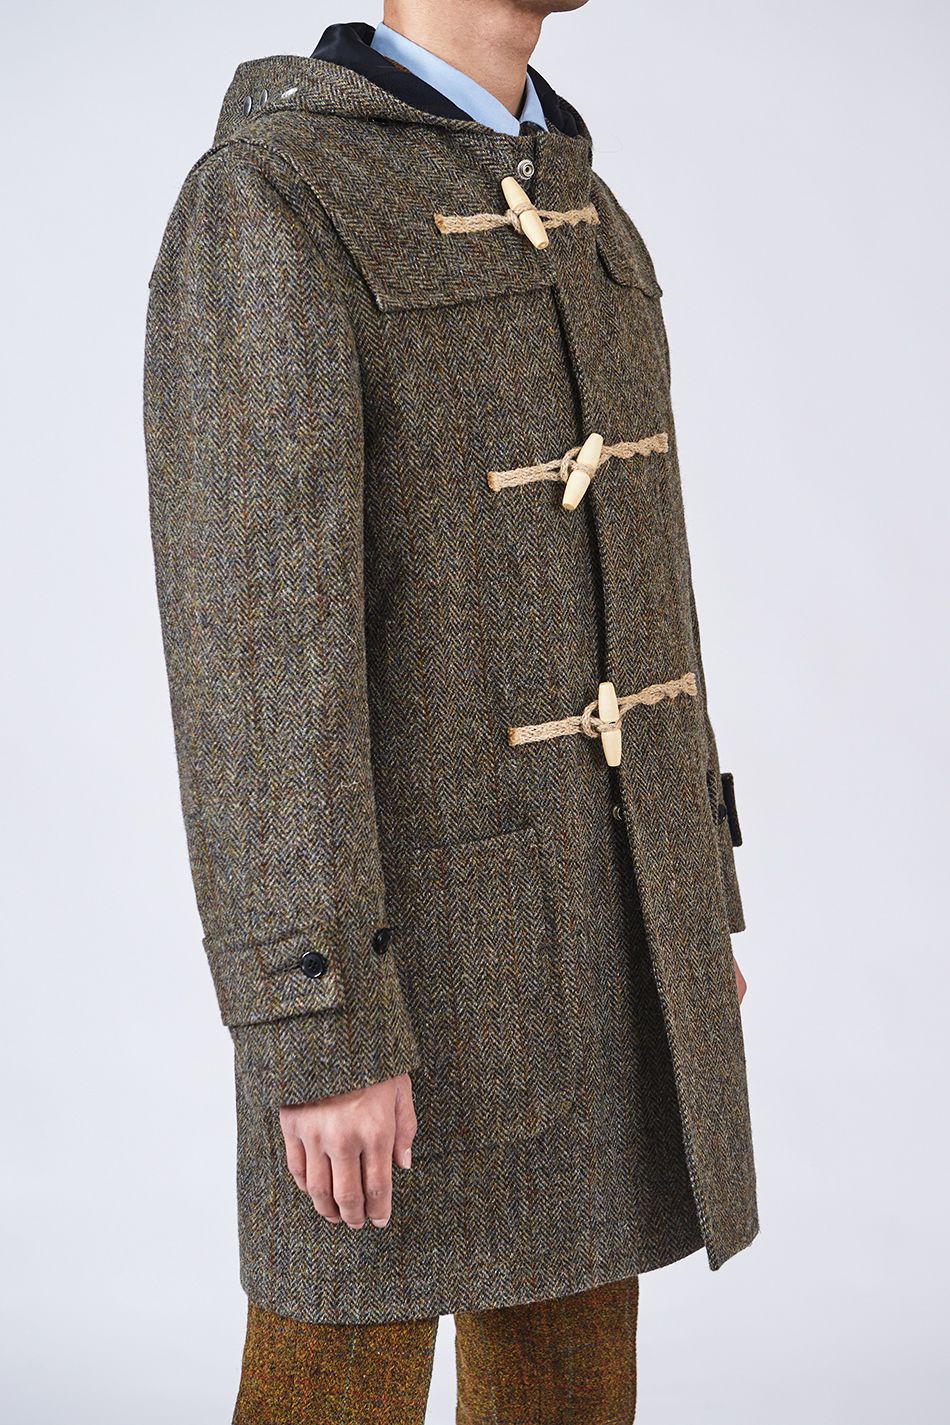 从军队专用到平民时尚一直被视为经典的达夫大衣有多迷人